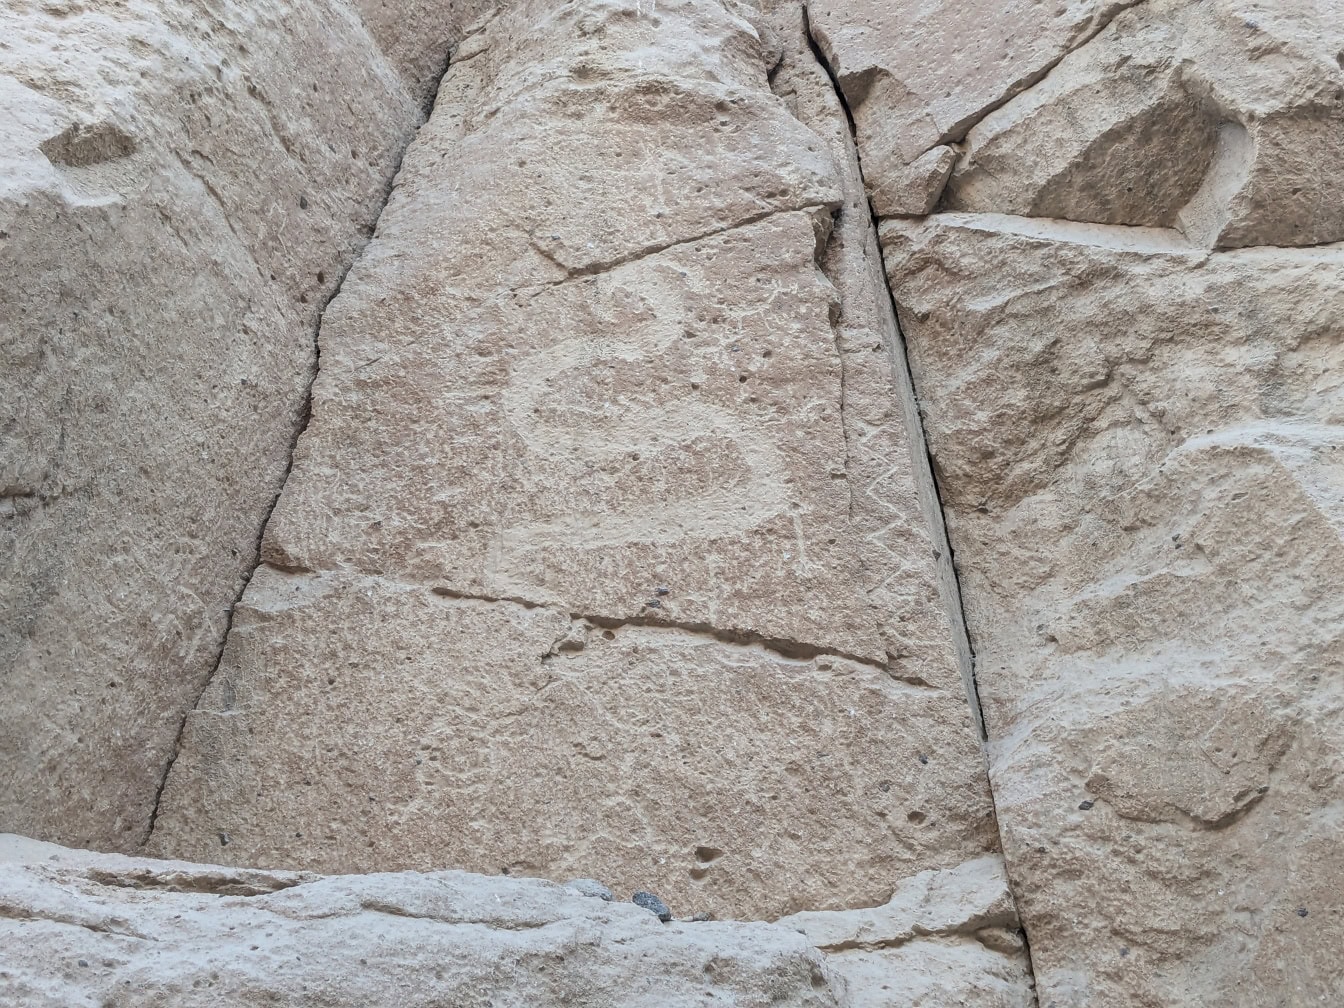 Petroglif uklesan u kamenu koji prikazuje životinju nalik zmiji ili zmaju, umjetnost iz kamenog doba pronađena u Peruu u Južnoj Americi